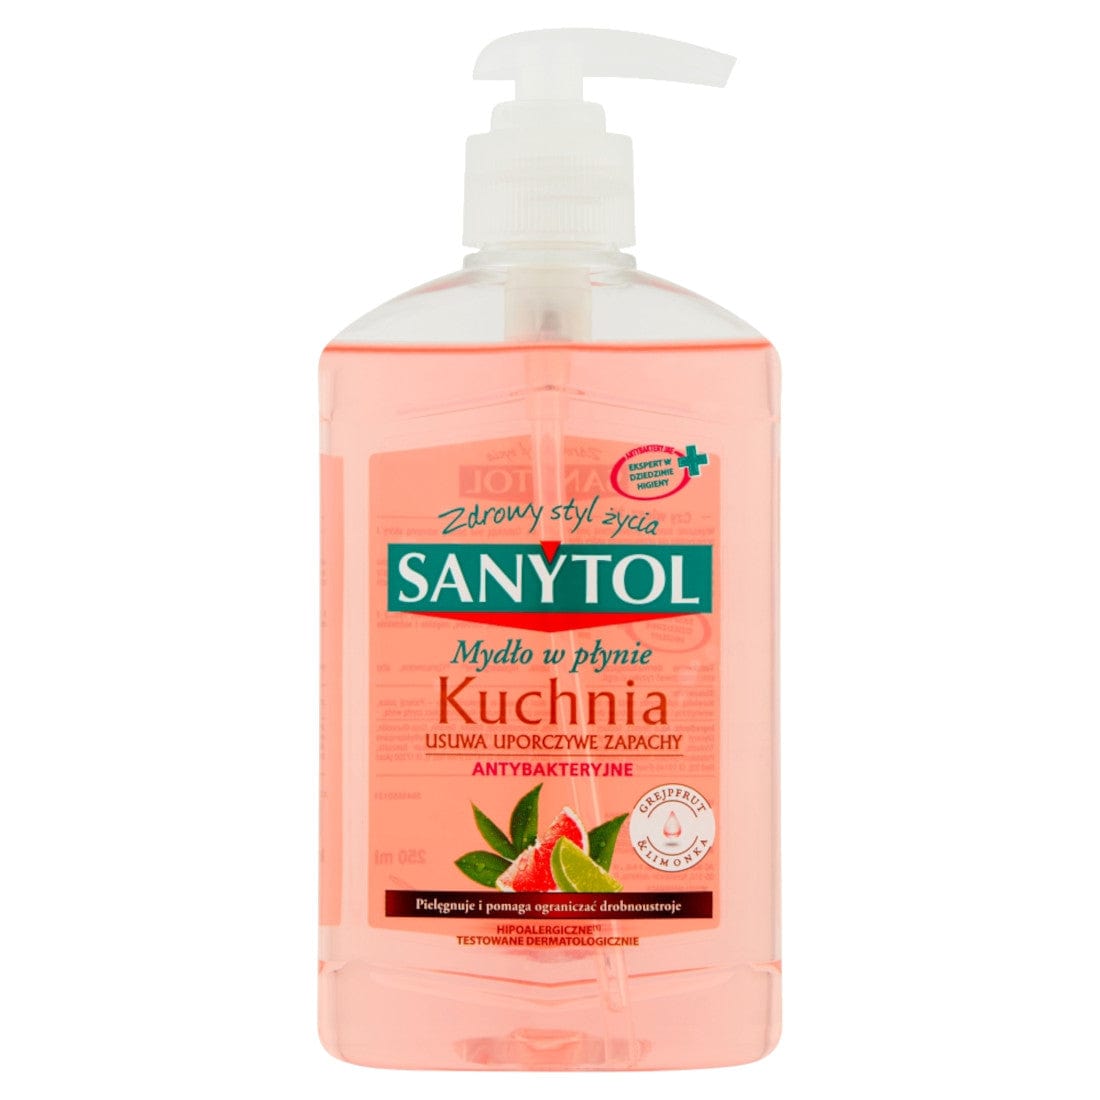 Produkt SANYTOL Pozostałe do sprzątania Mydło w płynie SANYTOL antybakteryjne do kuchni Grejpfrut i limonka 250 ml S01824